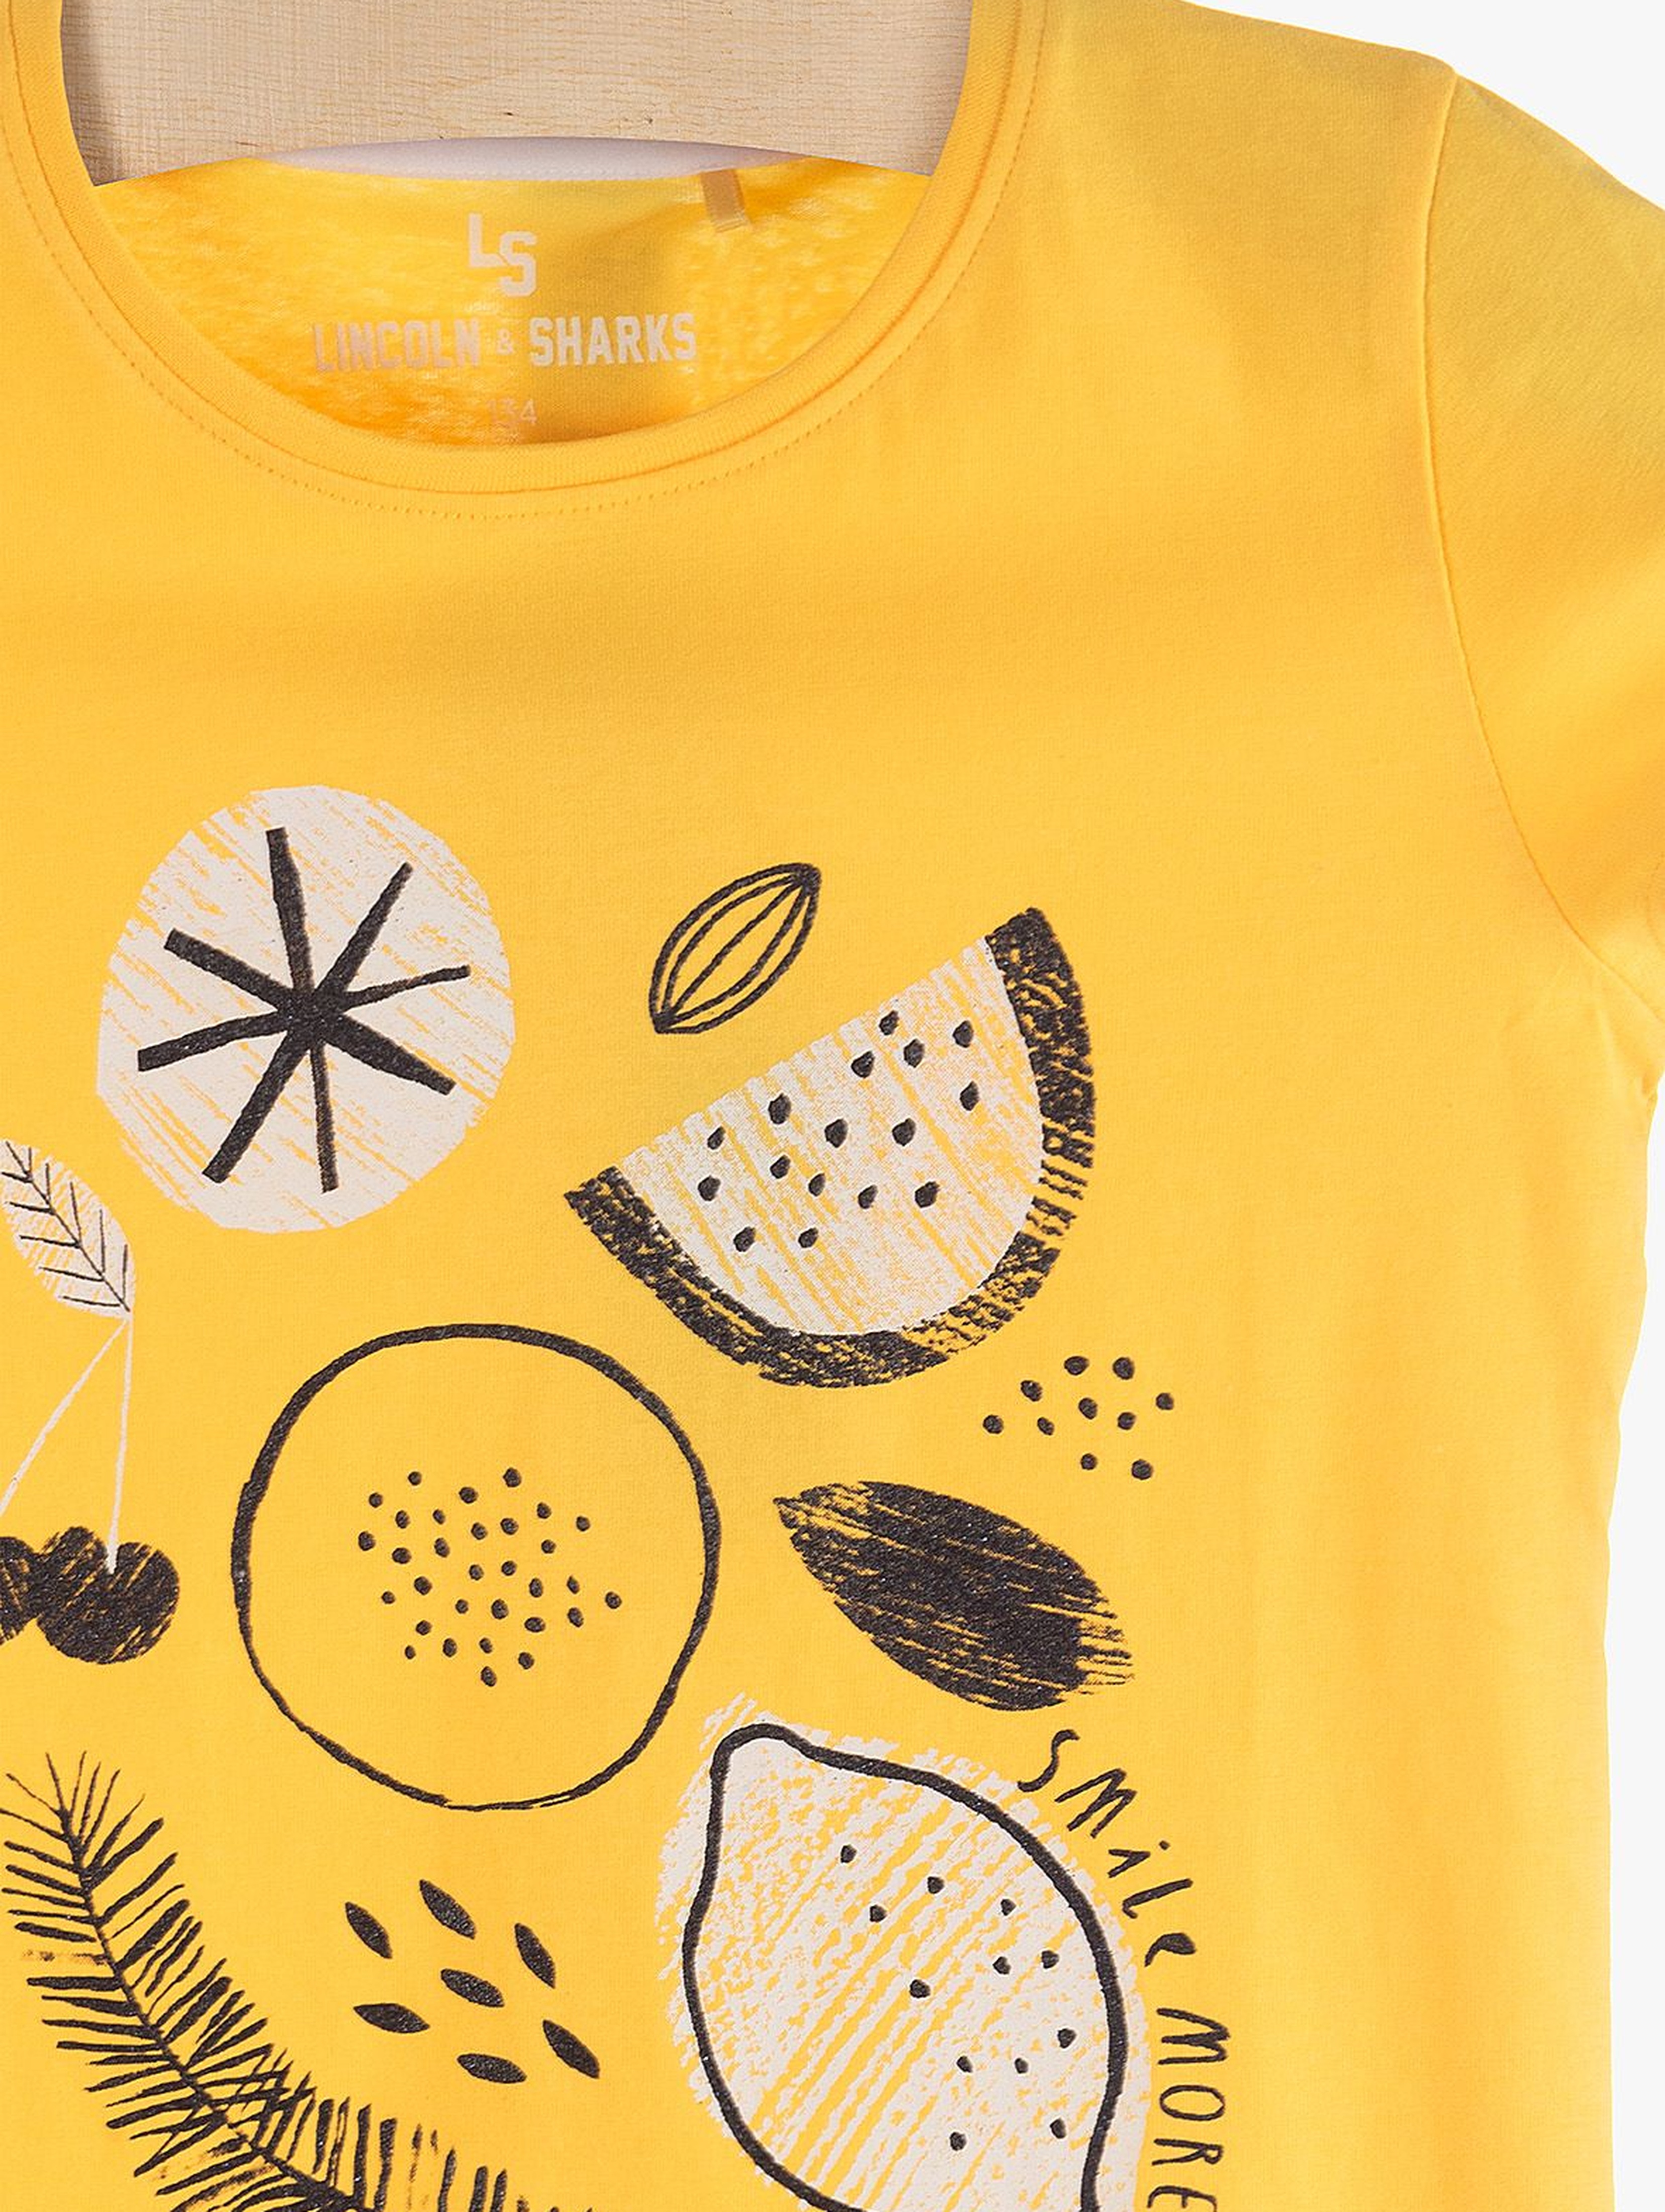 T-Shirt dziewczęcy żółty z cytrynami - 100% bawełna